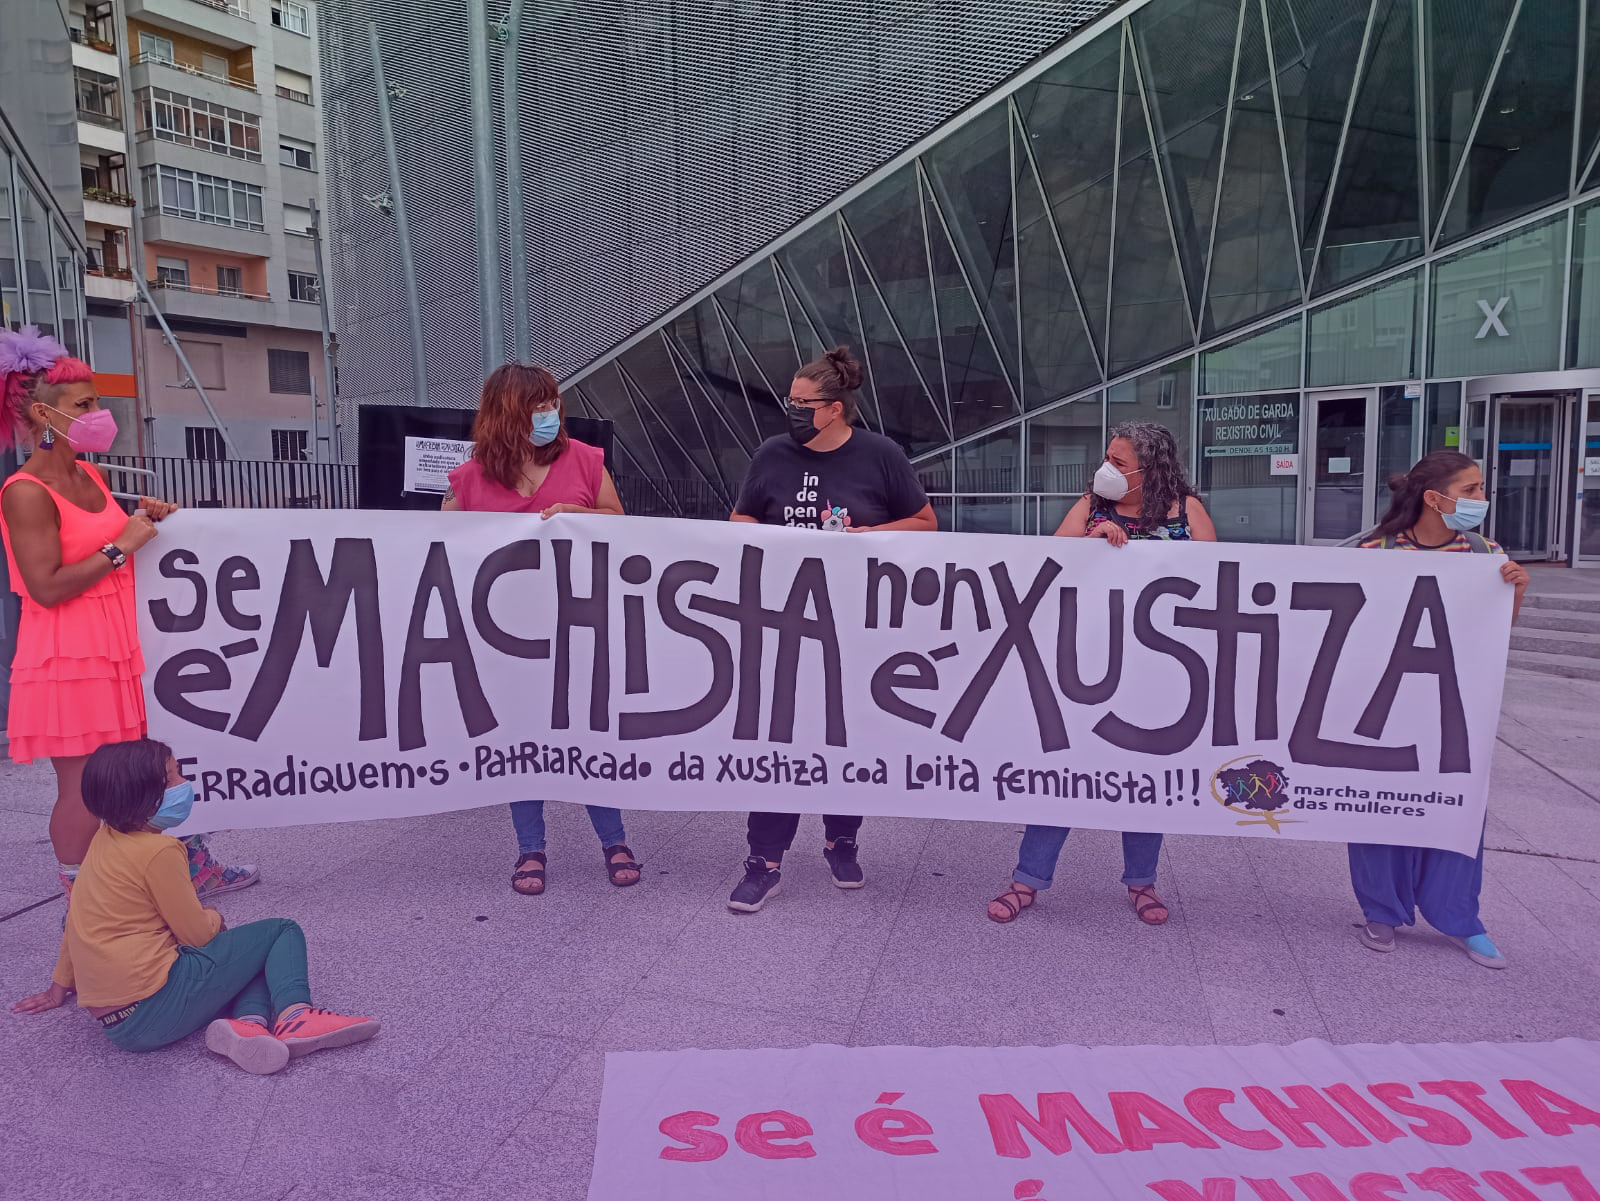 Feminismo en Galiza: combatir la justicia patriarcal en la periferia del centro capitalista